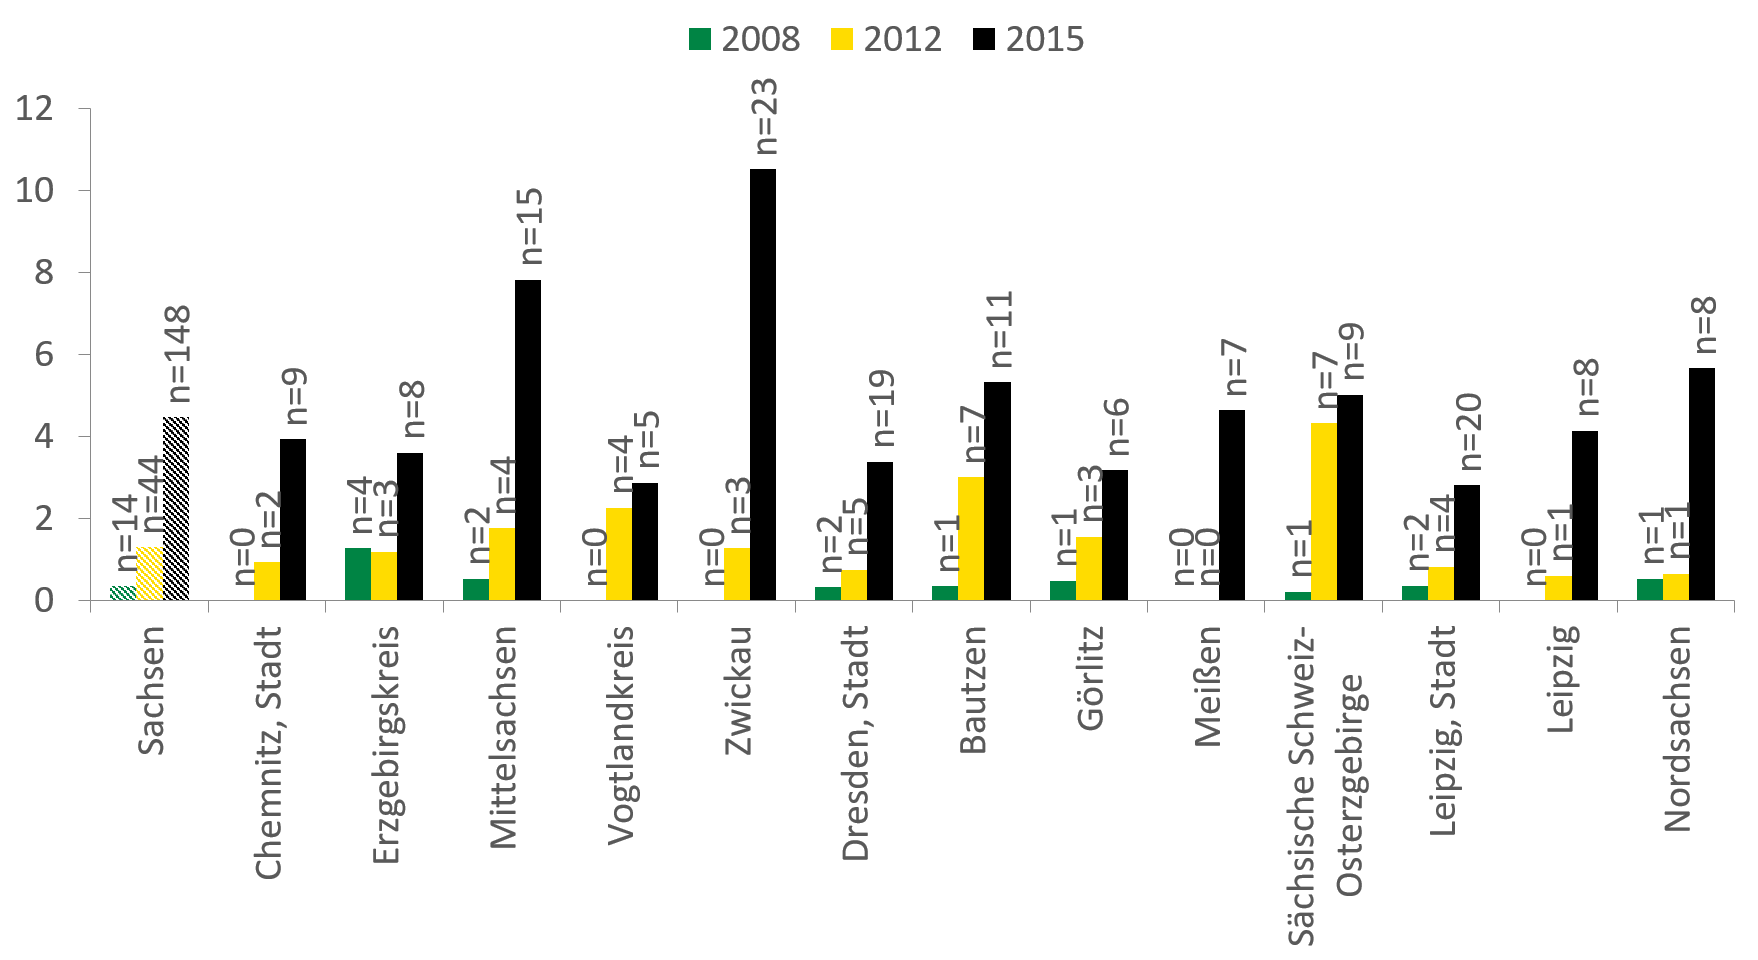 Für Stimulanzien zeigt sich ein deutlicher Anstieg der Fallzahlen in ganz Sachsen. Dies zeigt sich deutlich in Zwickau, wo die Zahl von 0 auf über 10 Fälle im Jahr 2015 angestiegen ist. Auch Nordsachsen hatte bis 2012 unter 1 Fall pro 100.000 Einwohner zu verzeichnen, bis 2015 ist die Zahl auf über 5 angestiegen.